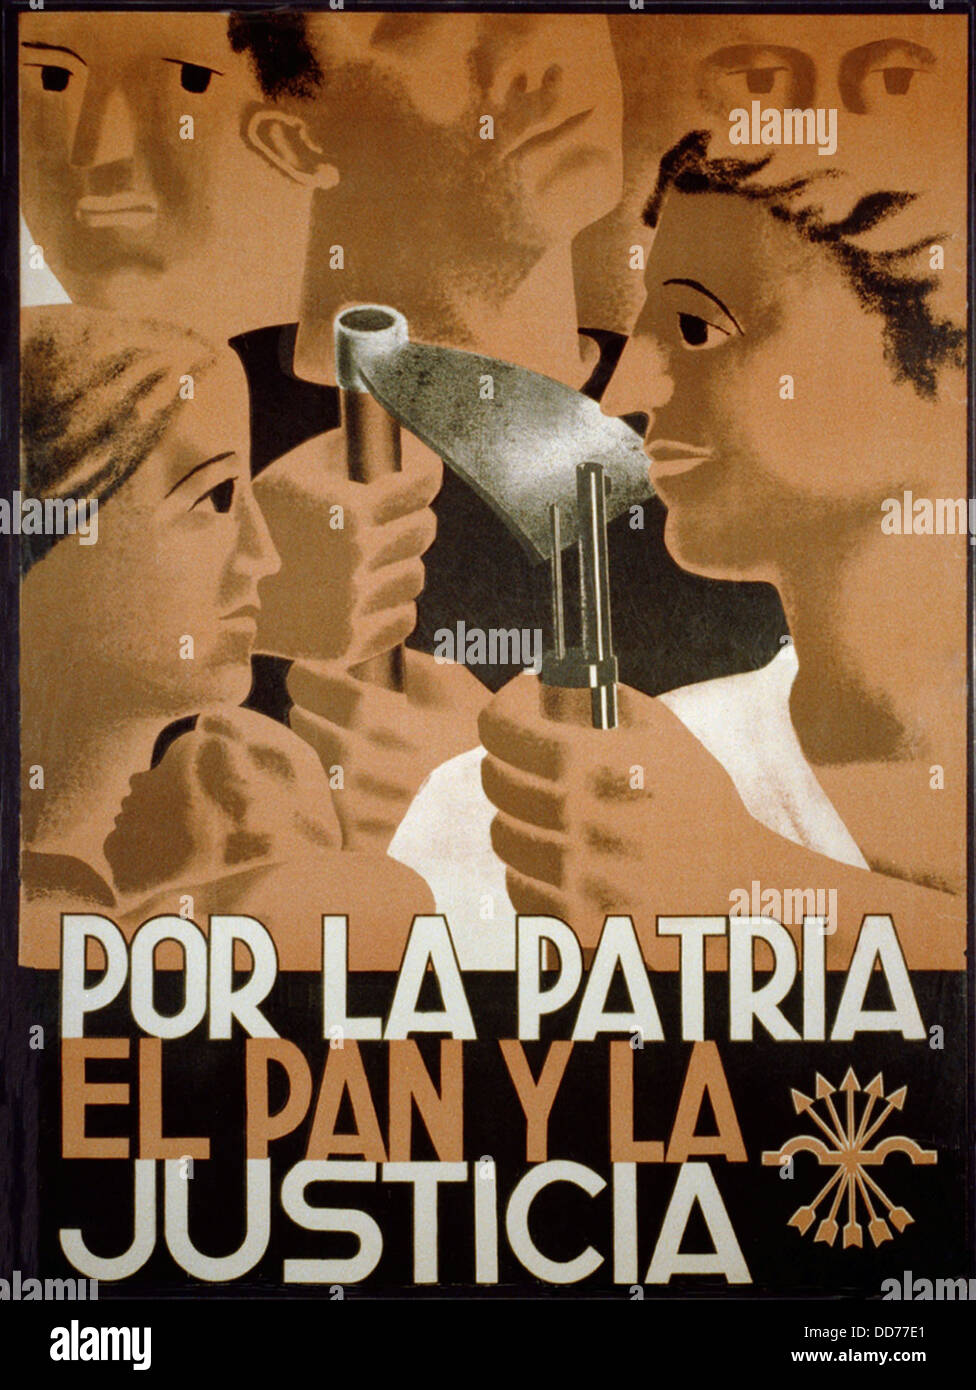 Pour la patrie, DU PAIN ET DE LA JUSTICE. Guerre civile espagnole présentant l'affiche de propagande nationaliste. Image est un collage de stylisation Banque D'Images